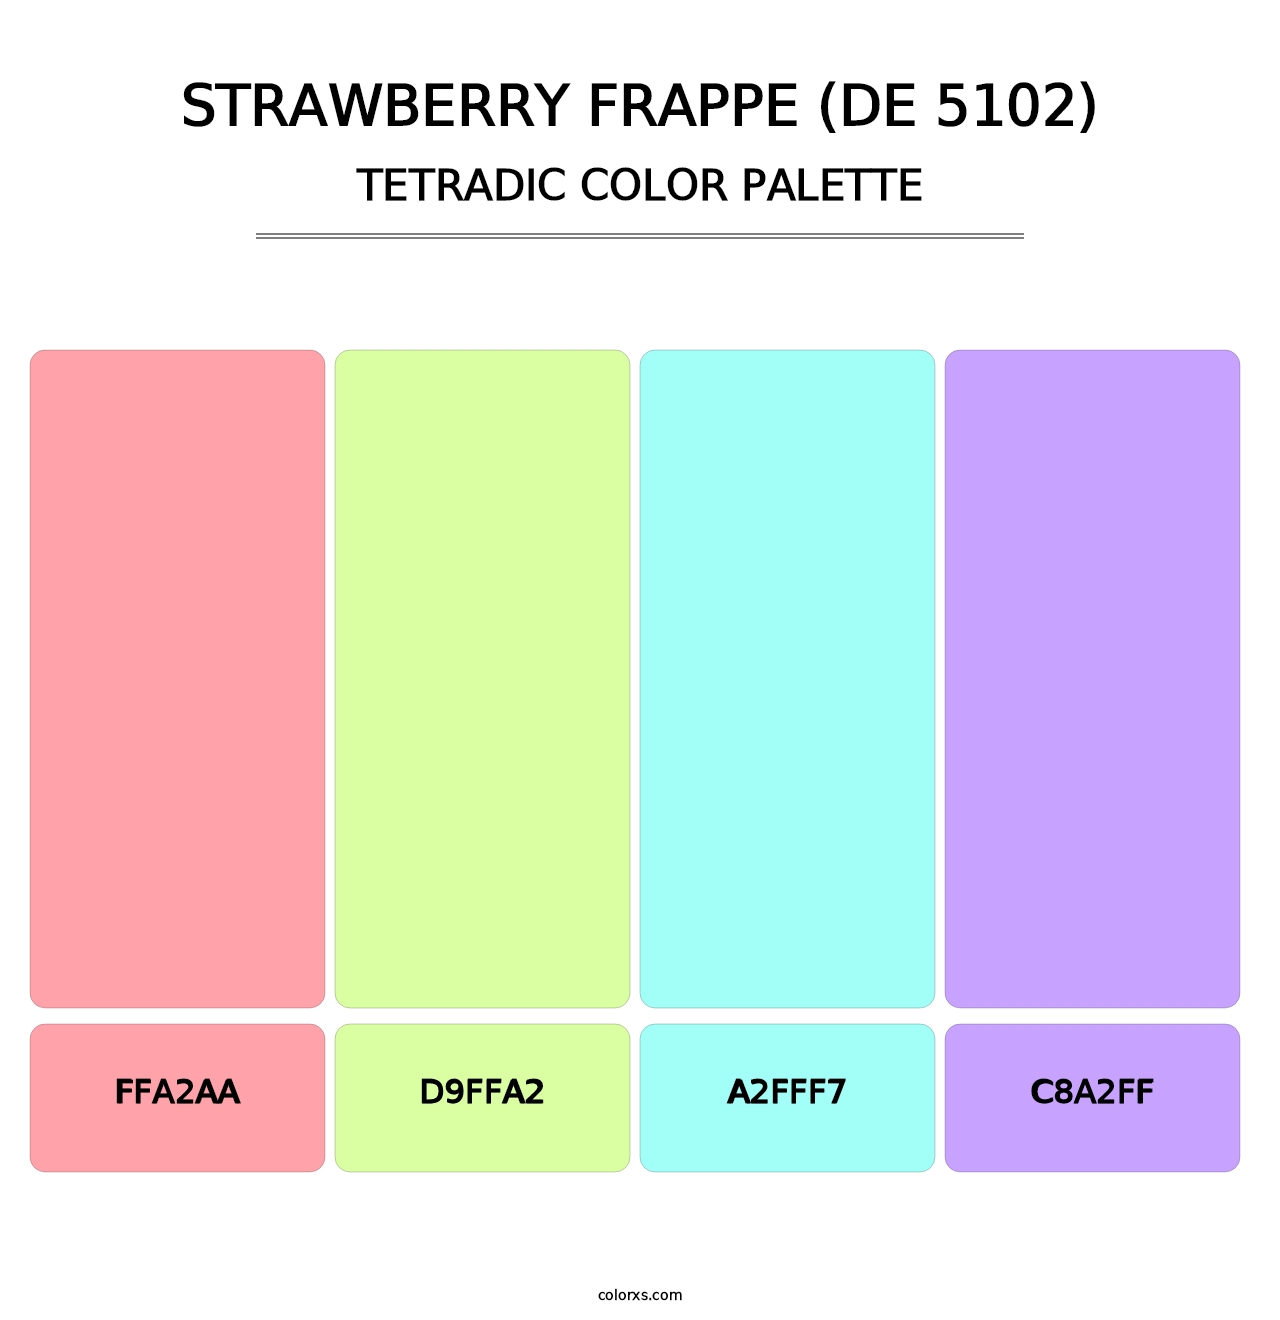 Strawberry Frappe (DE 5102) - Tetradic Color Palette